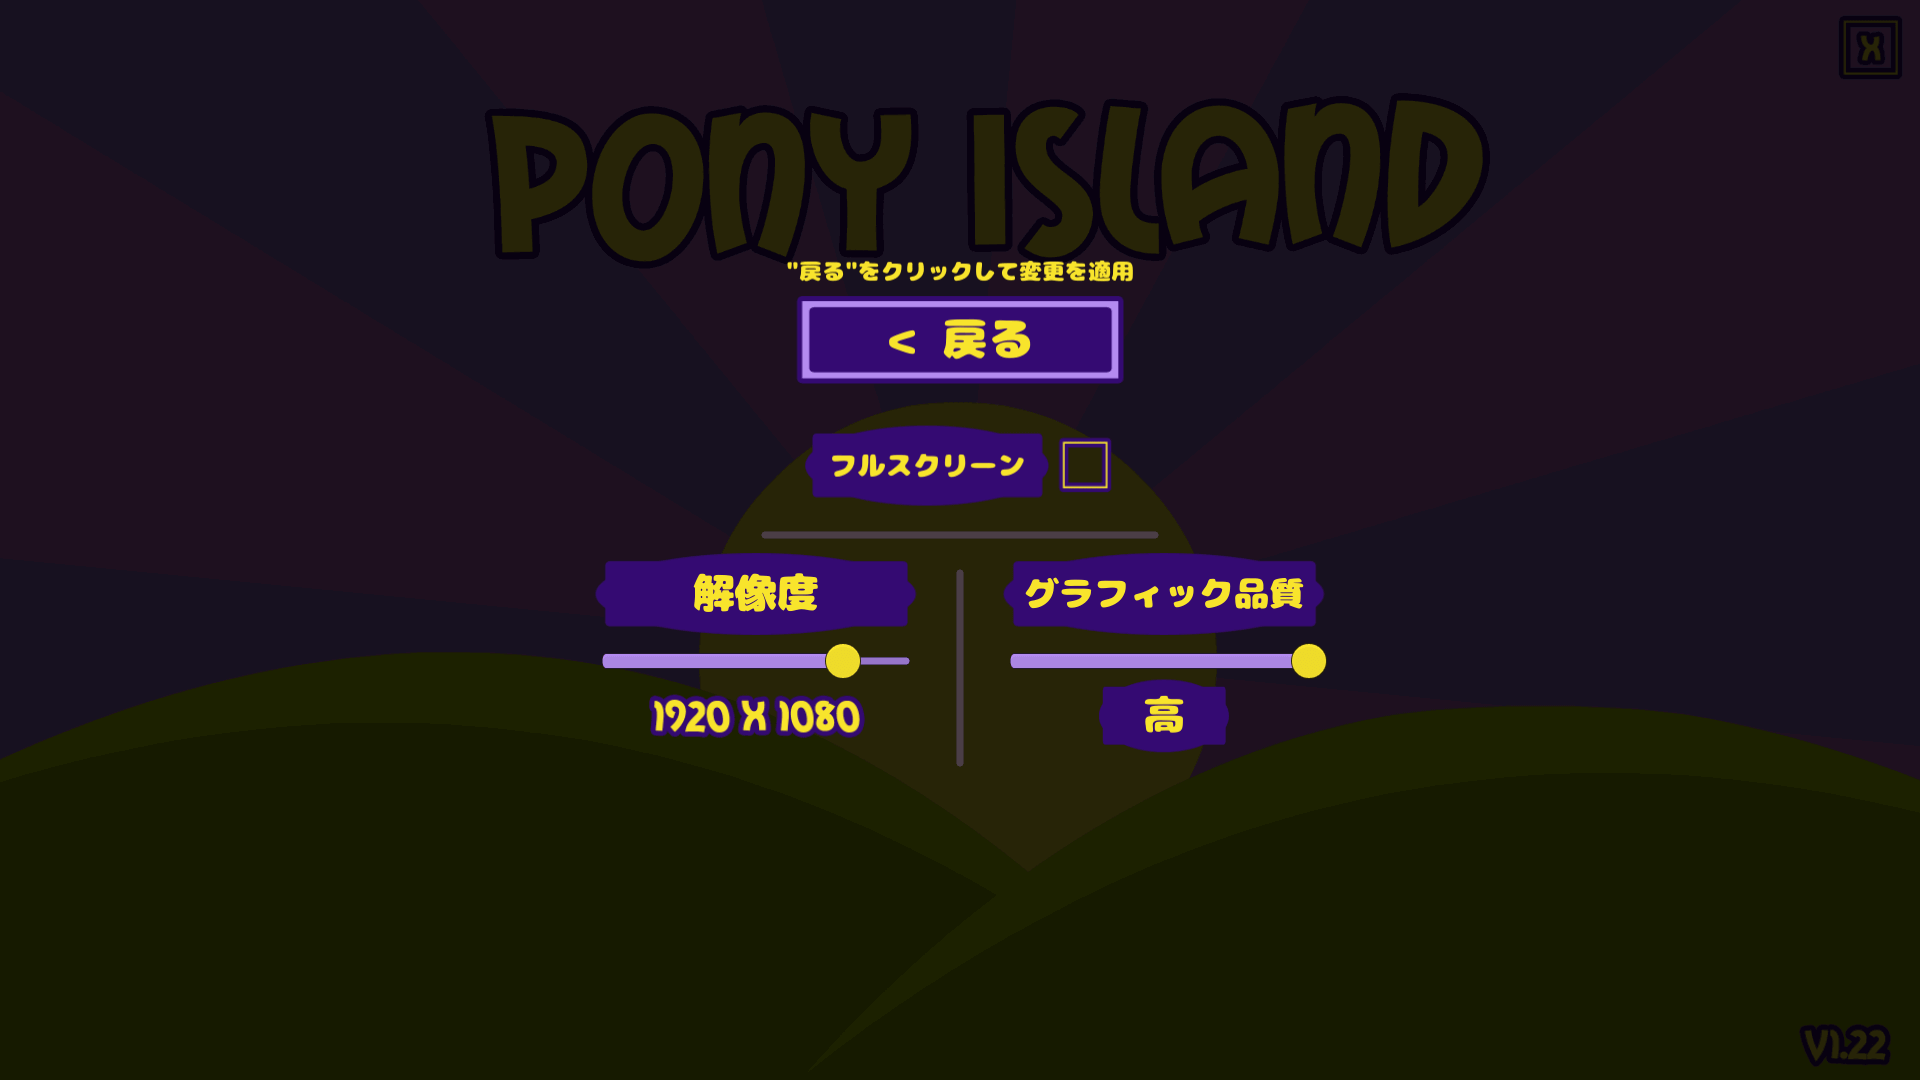 過去に公開された PC ゲーム Pony Island の日本語化ファイルを何とかして再現する方法、PC ゲーム Pony Island 日本語化方法、手順 5 ： ゲーム内言語切り替え、ゲームを起動して OPTIONS を選択 → LANGUAGE SETTINGS を選択 → français を選択、タイトル画面に戻り日本語に変更されていれば成功